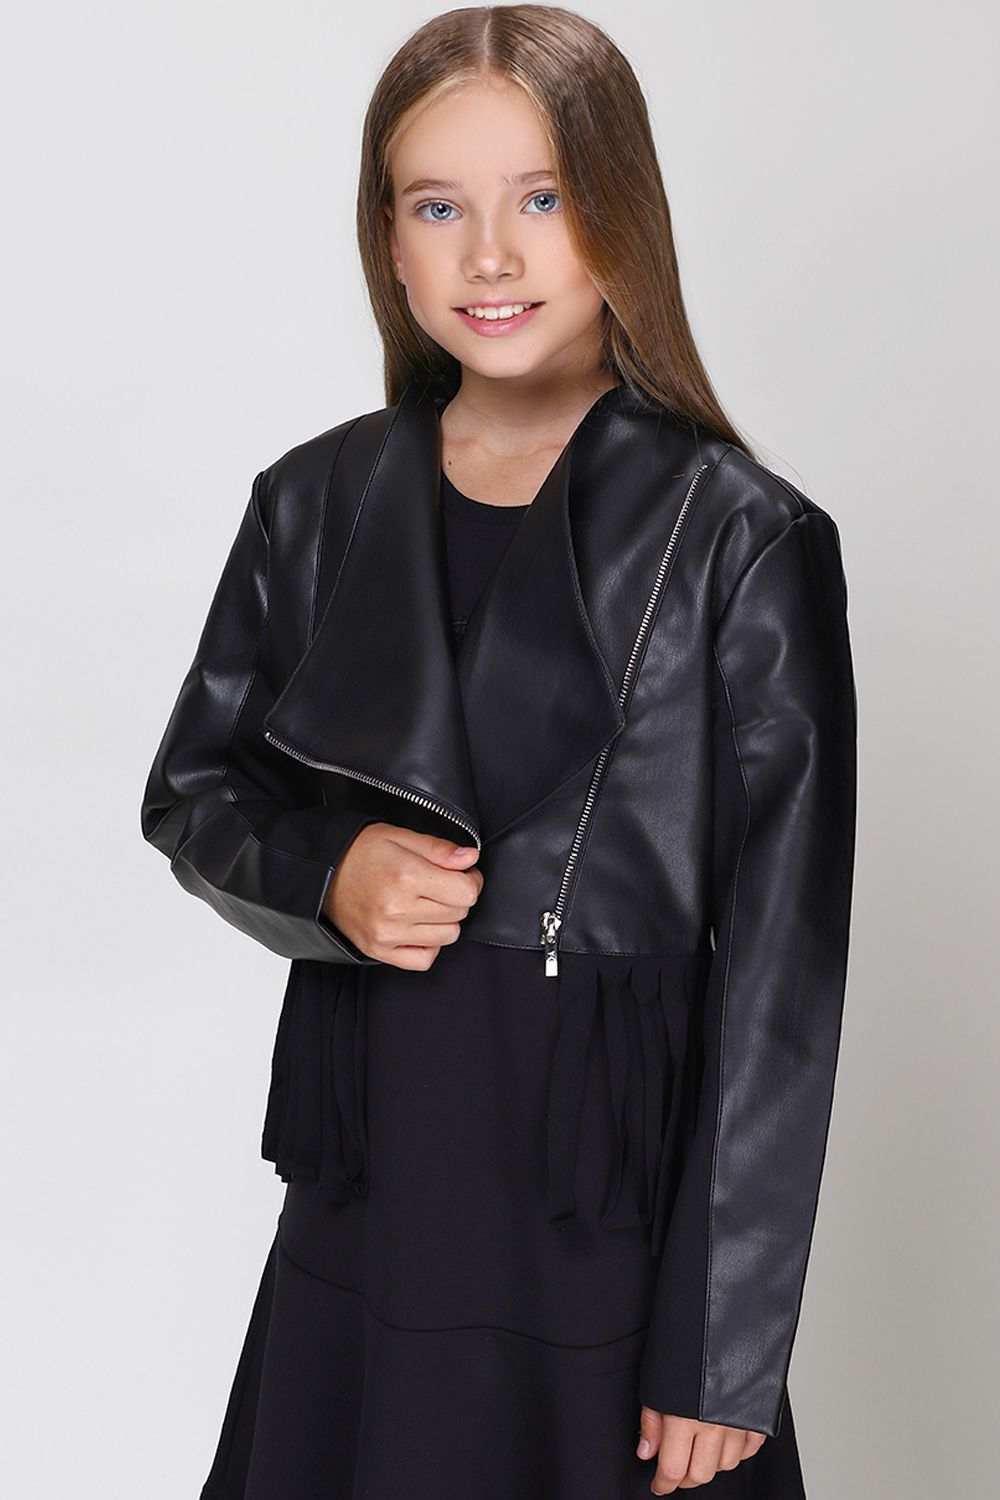 Куртка Y-clu', размер 140, цвет черный Y12160 - фото 1